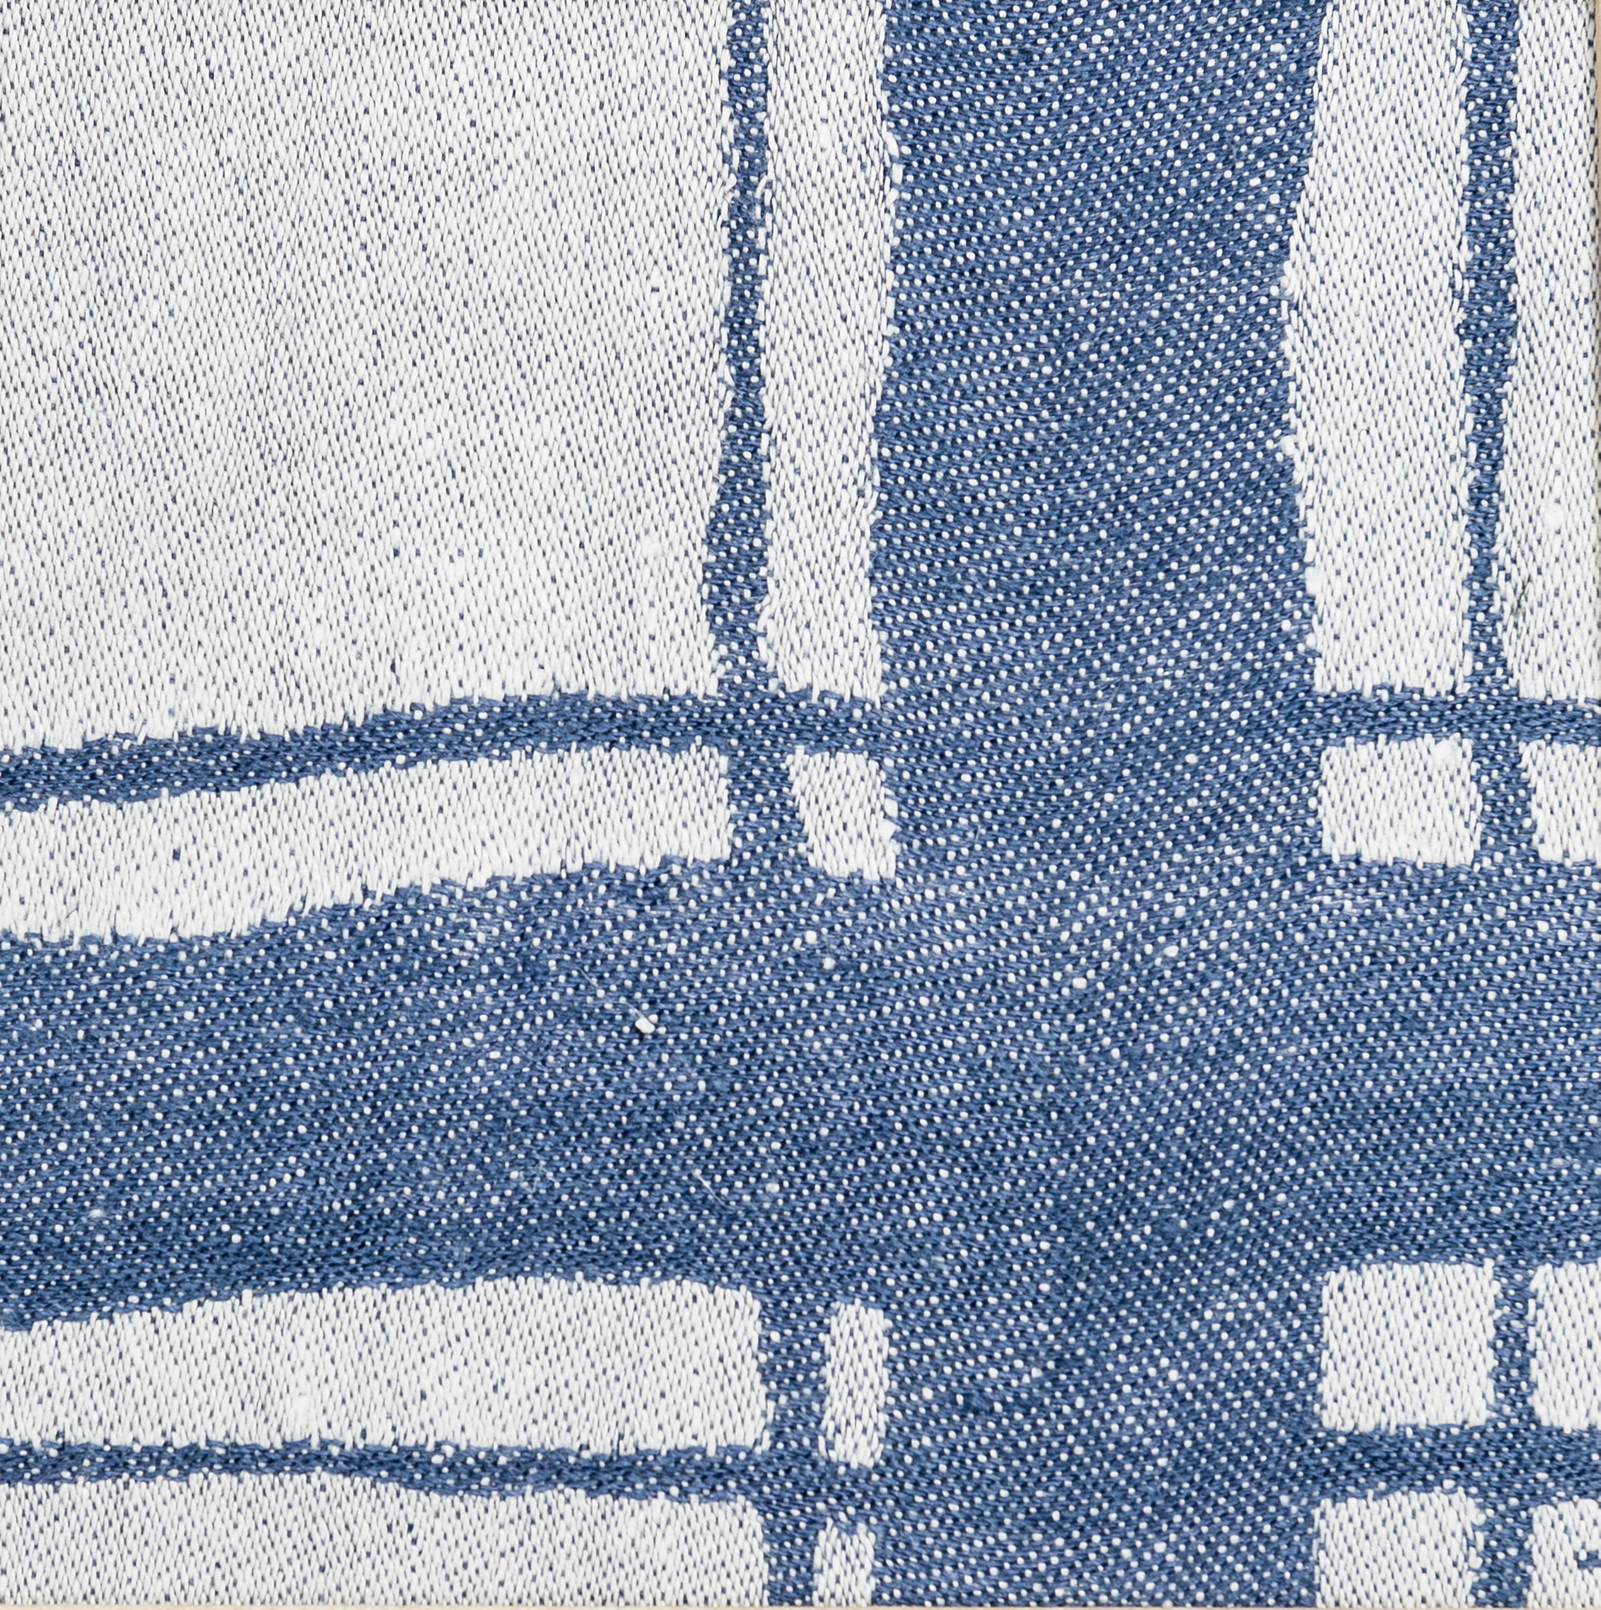 Haga linen towel Klässbols Linneväveri designer Jennie Adén Jeans blue